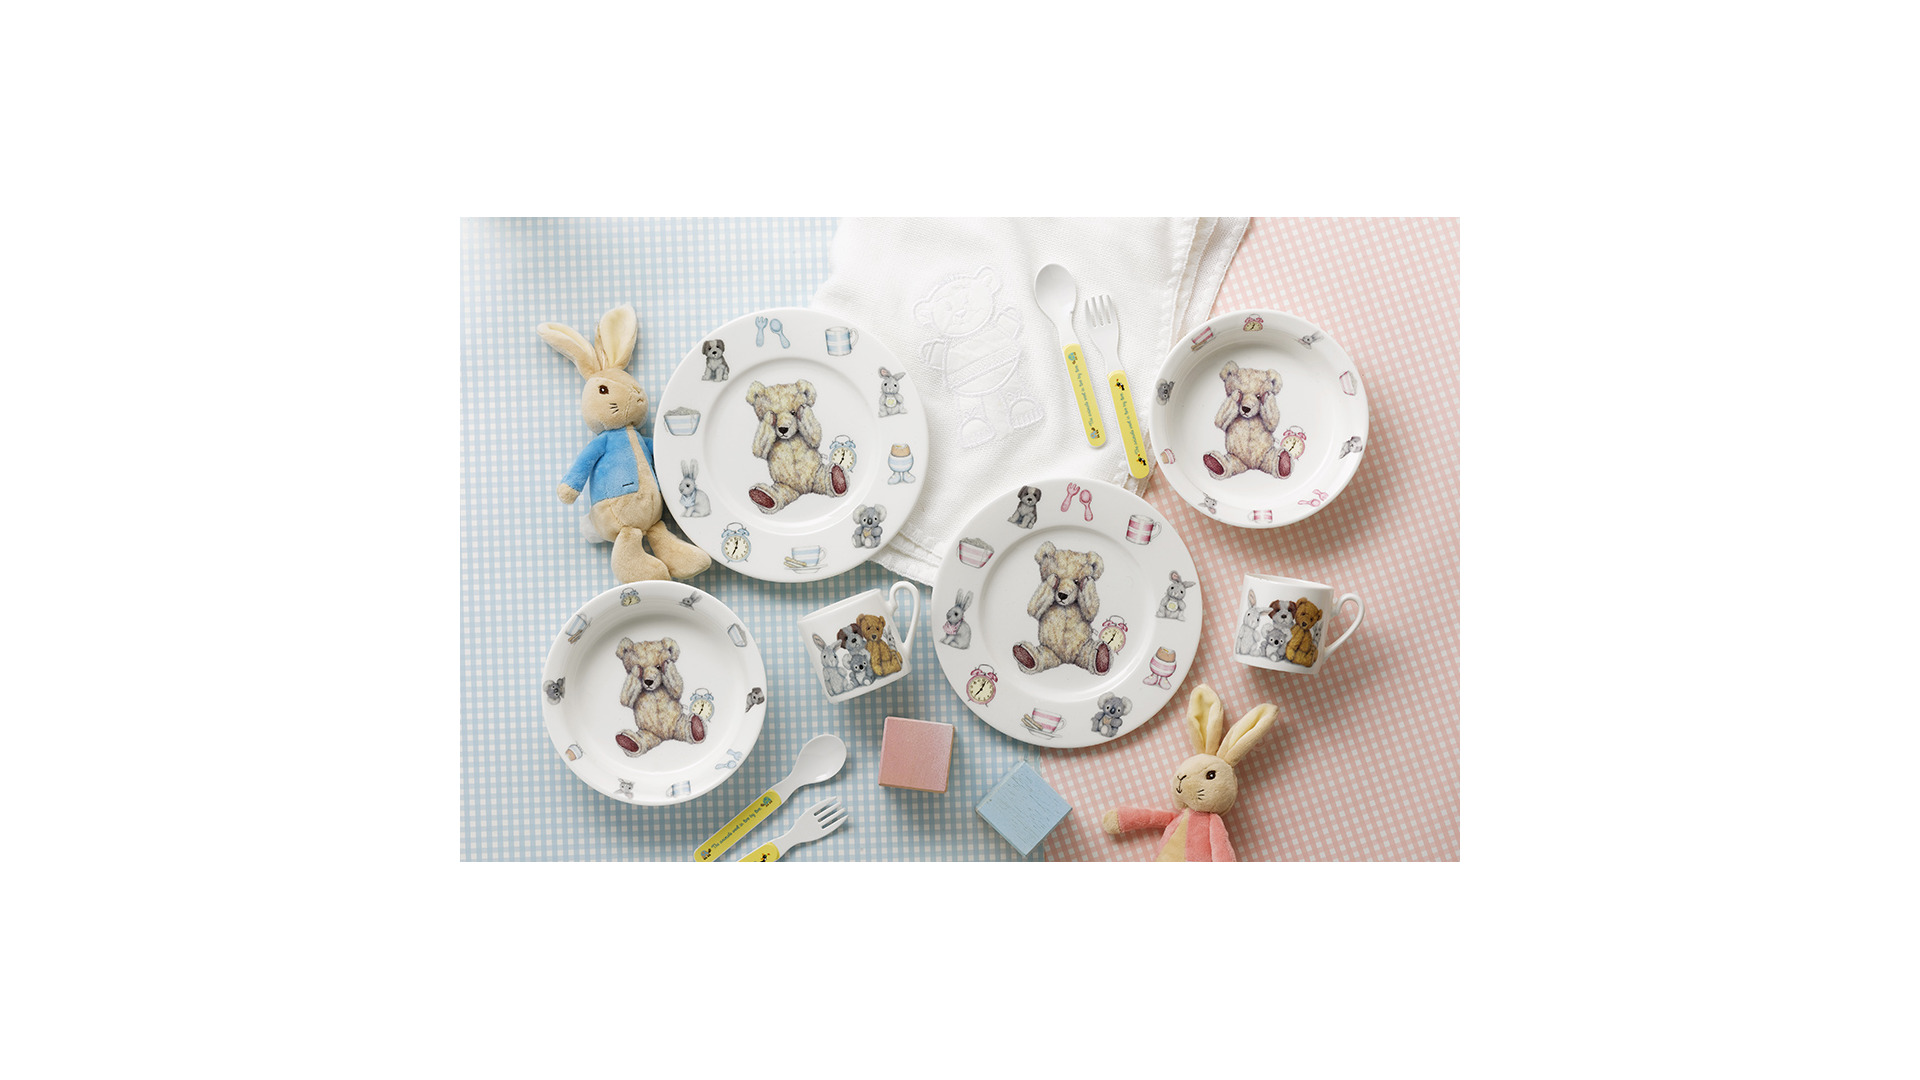 Набор детской посуды для девочки Roy Kirkham Тедди тайм 3 предмета, фарфор костяной